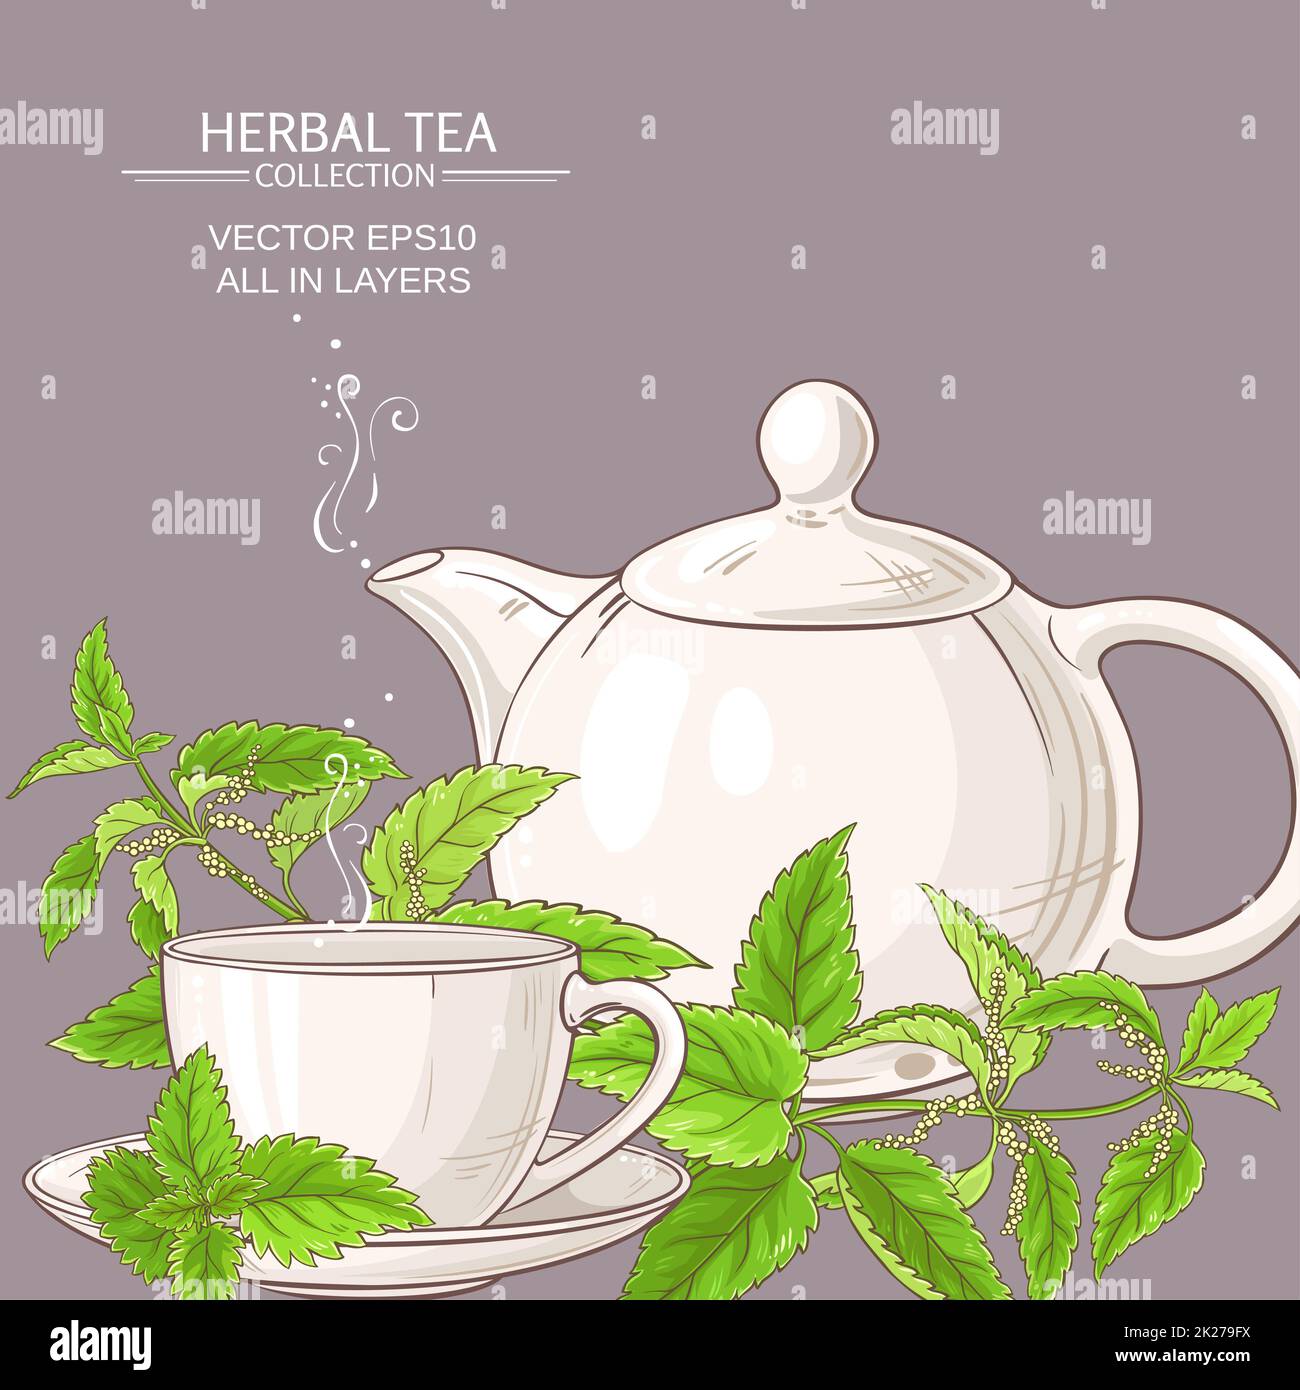 nettle tea illustration Stock Photo